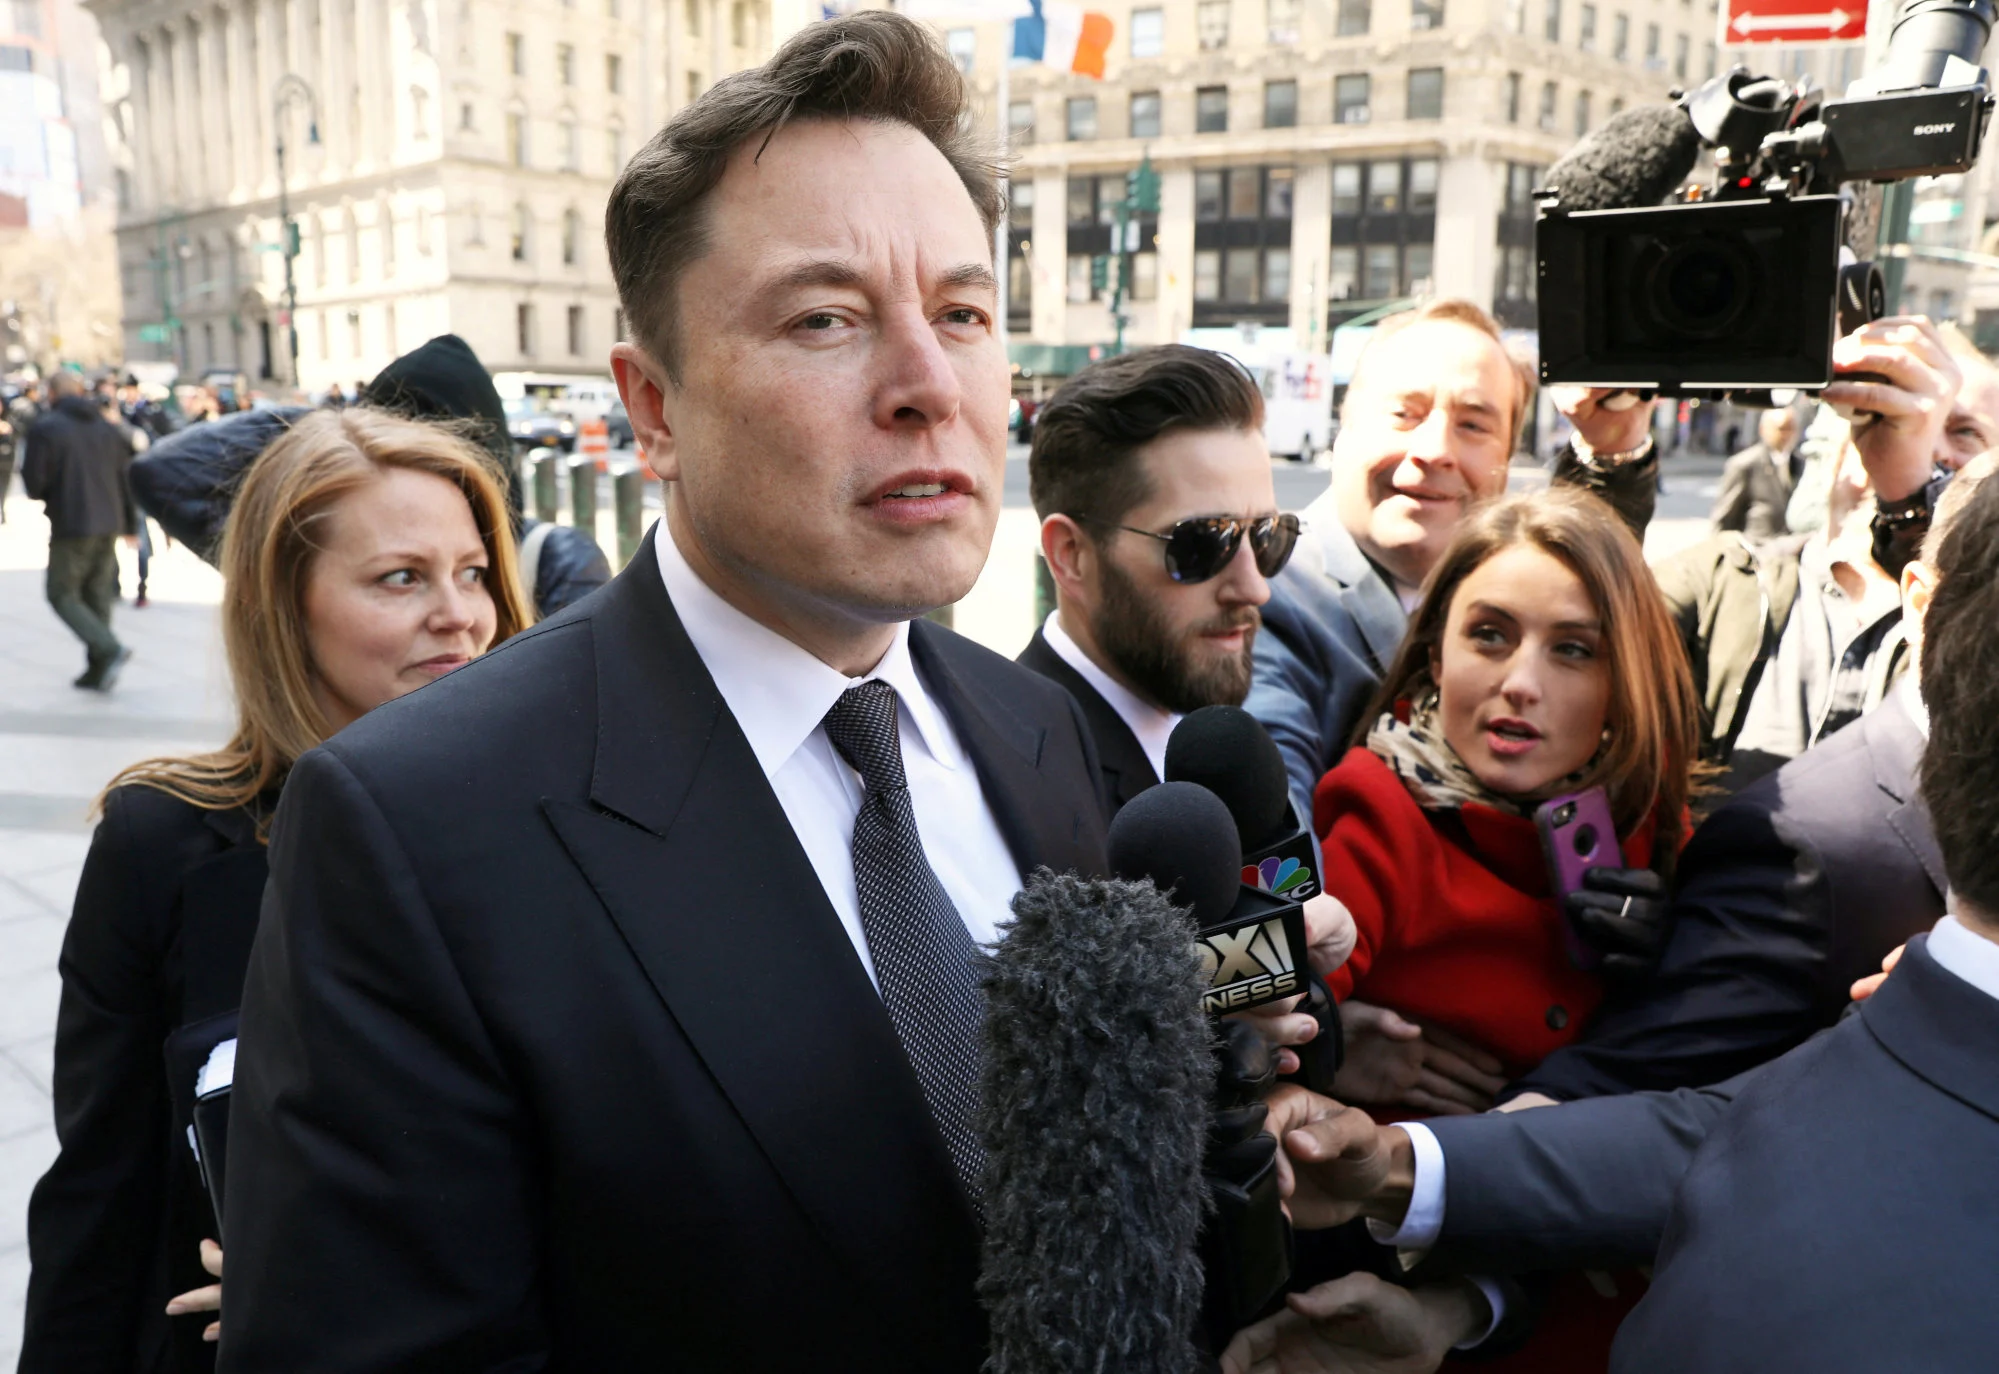 Giám đốc điều hành Tesla, Elon Musk, không lạ gì với những tranh cãi - hoặc các phiên tòa gây ...